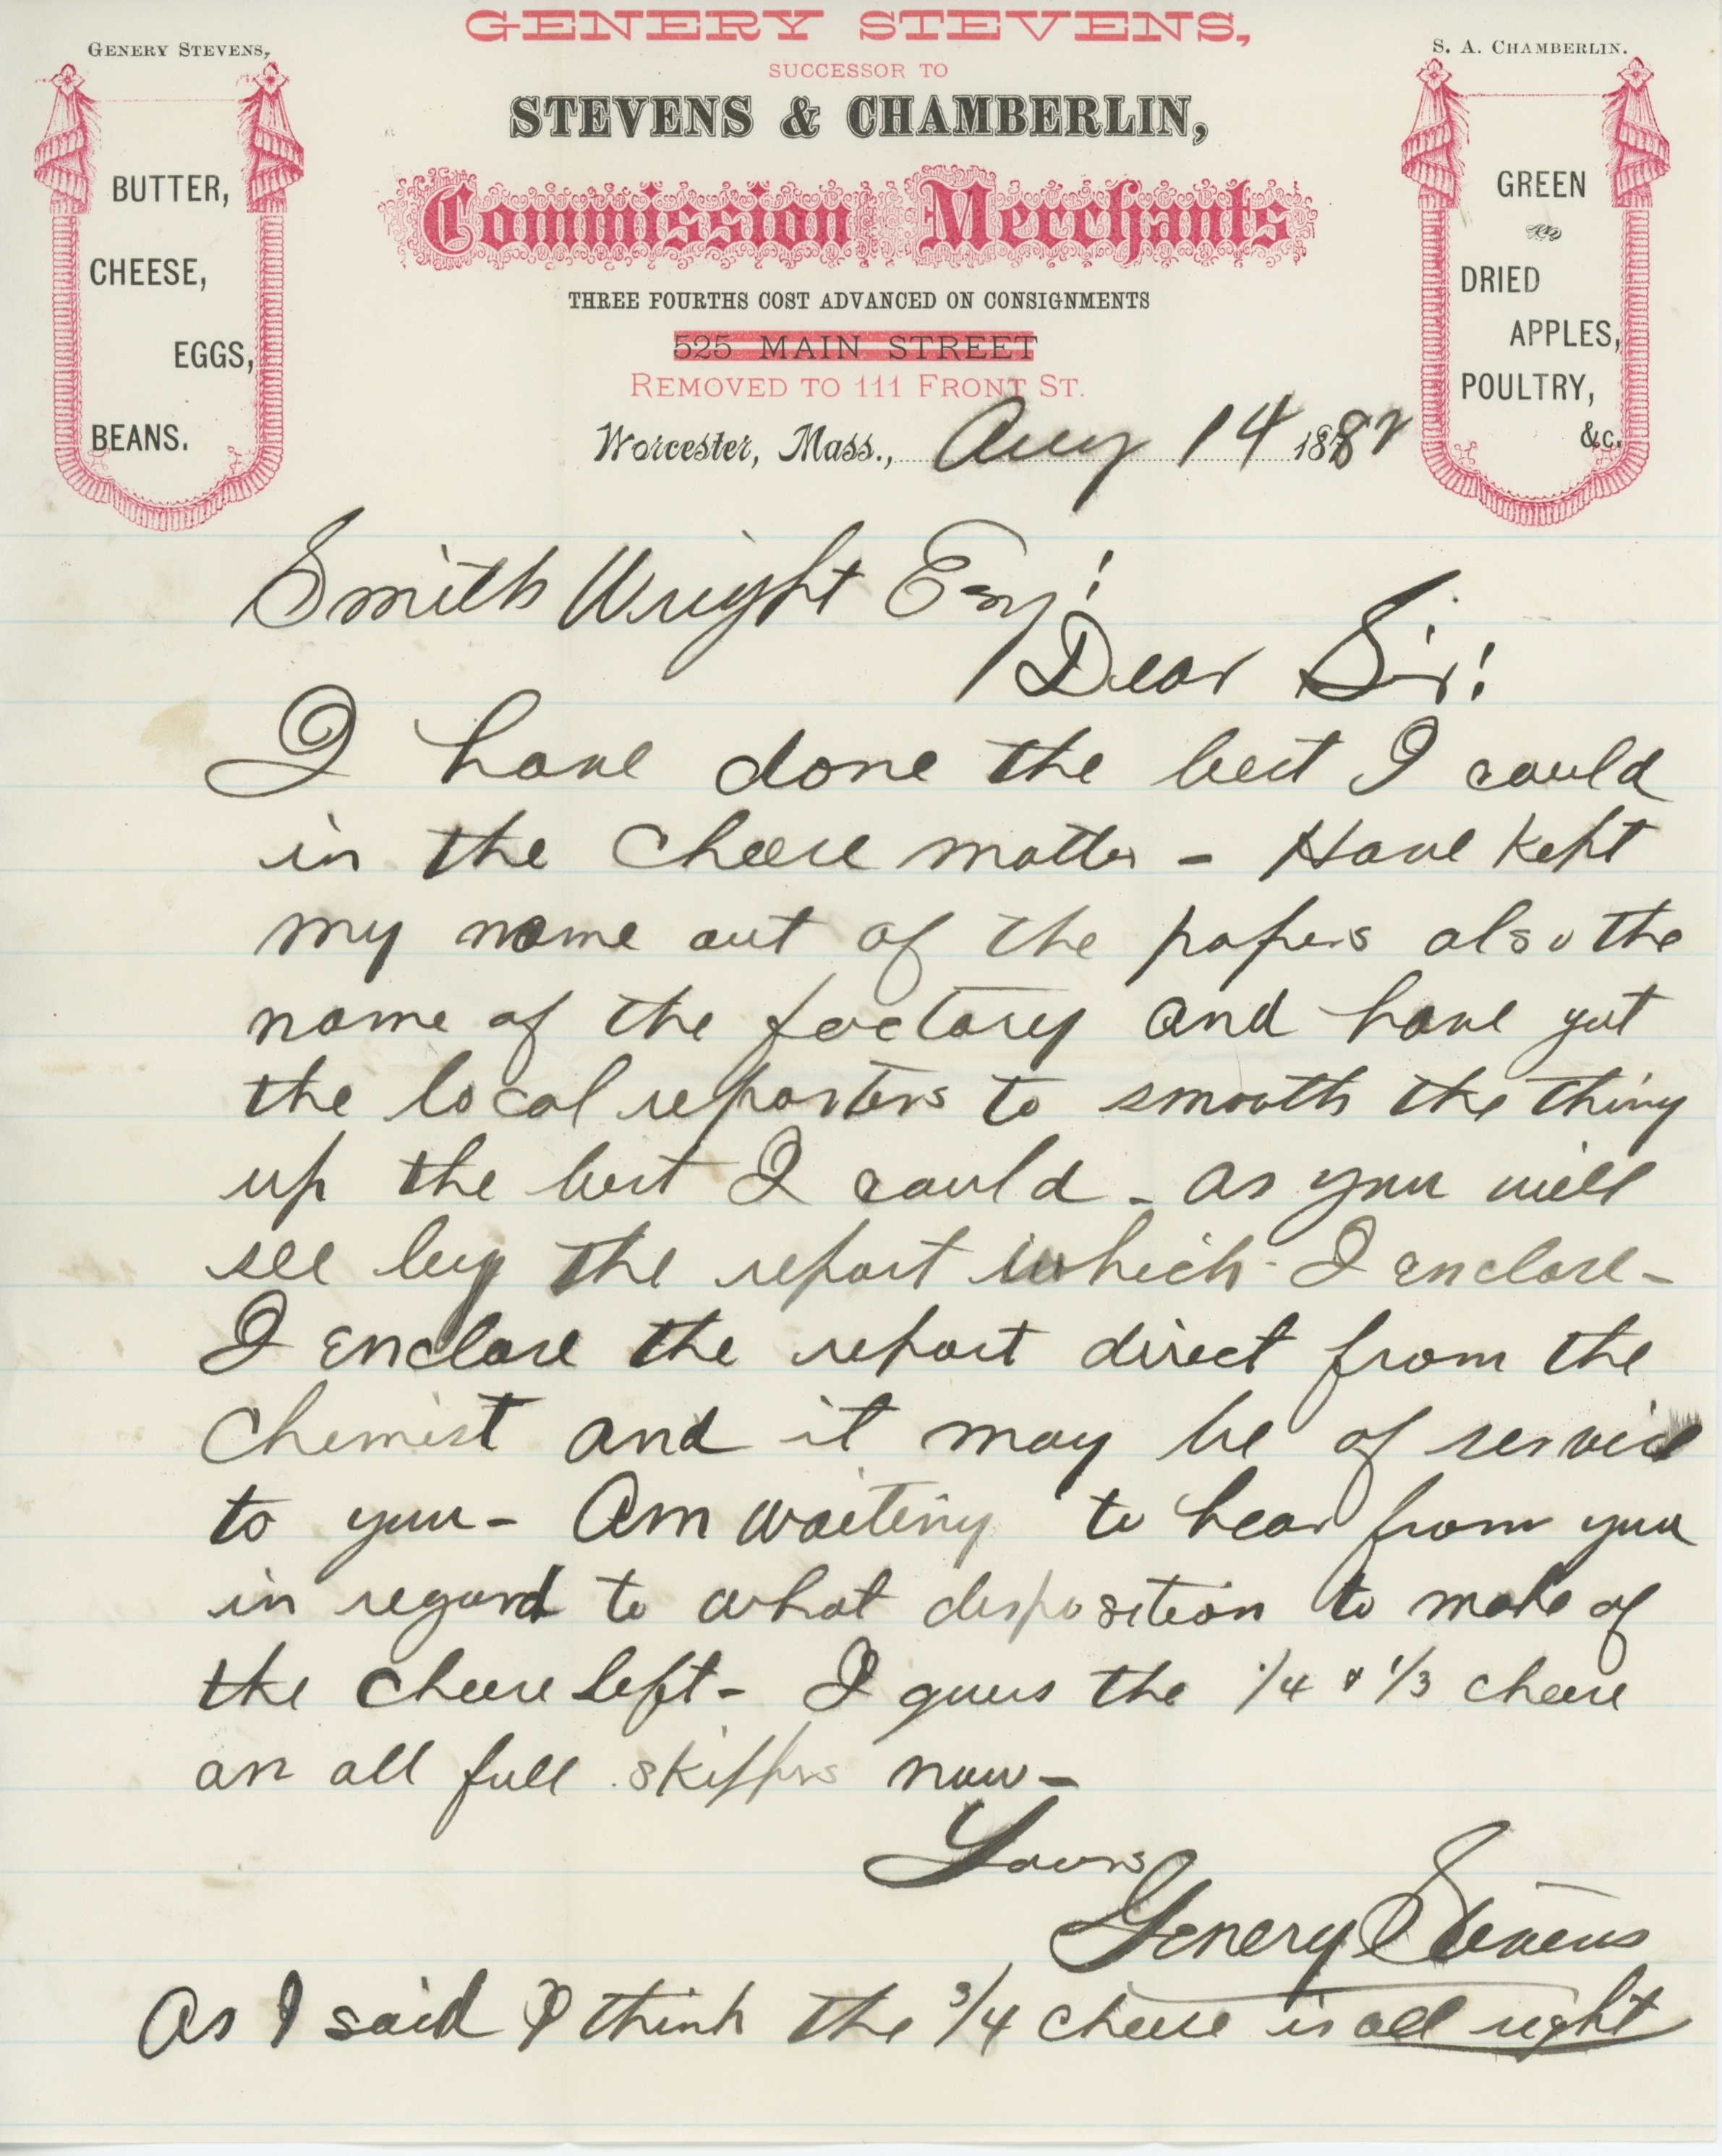 colinrussell-1900-generystevens-letter 1.jpg